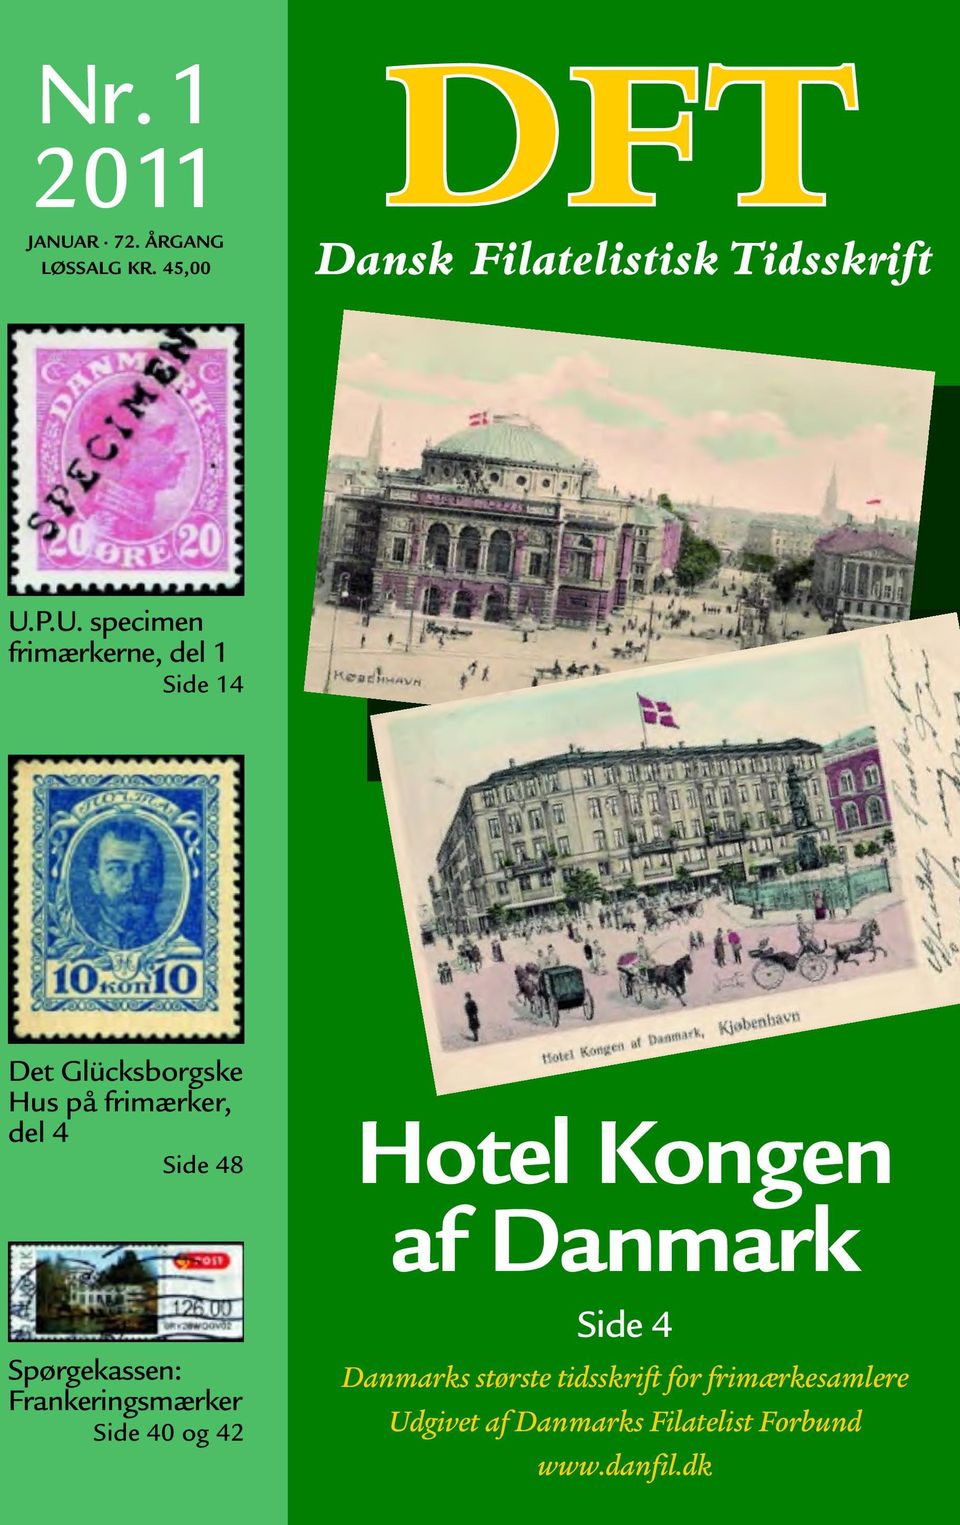 P.U. specimen frimærkerne, del 1 Side 14 Det Glücksborgske Hus på frimærker,